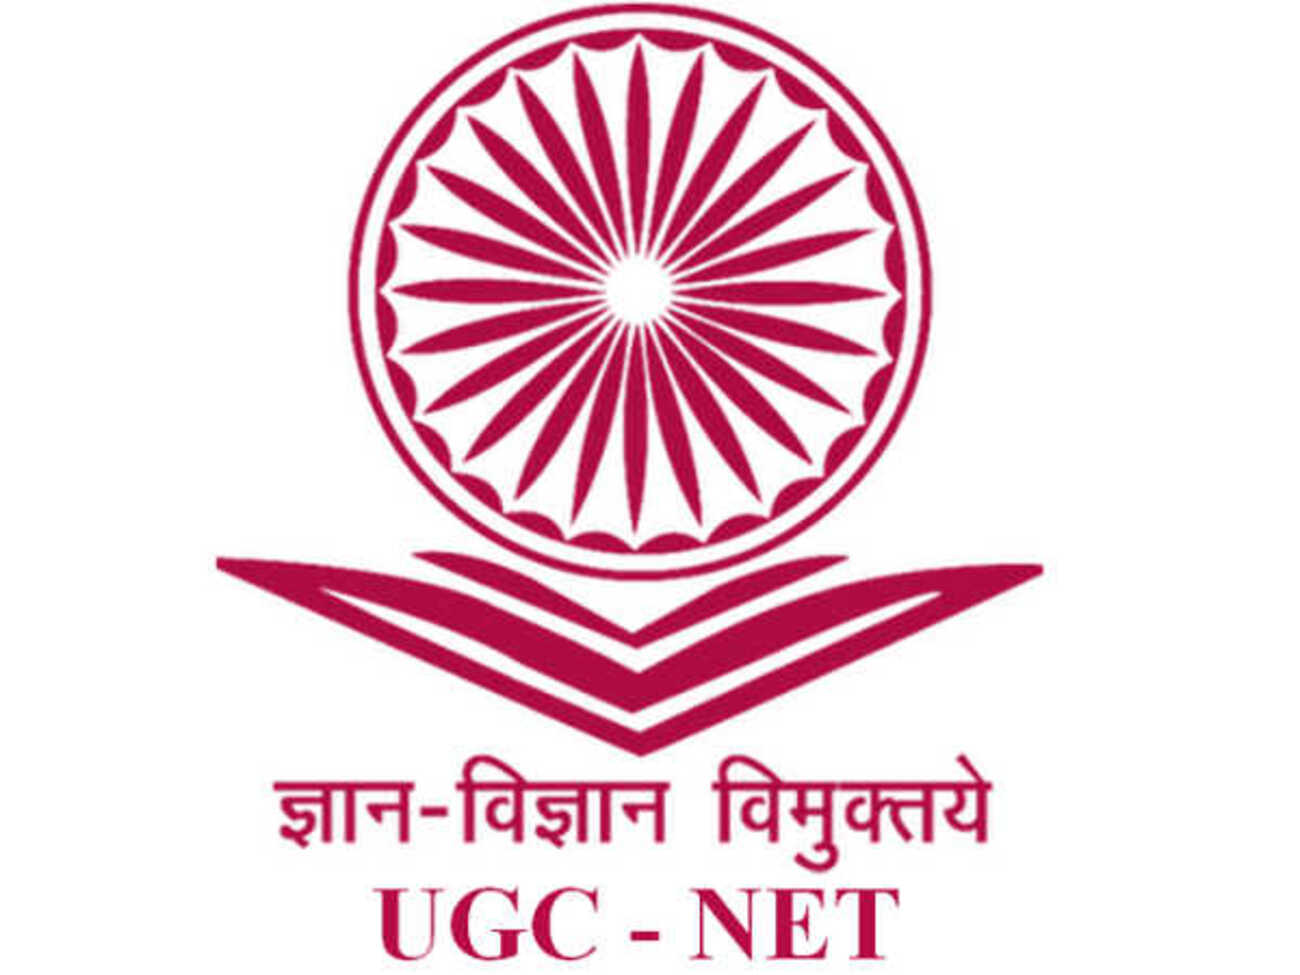 UGC NET 2023: उम्मीदवारों के लिए बड़ी खबर, आन्सर-की जारी, ऐसे करें चेक, 8 जुलाई तक दर्ज करें आपत्ति